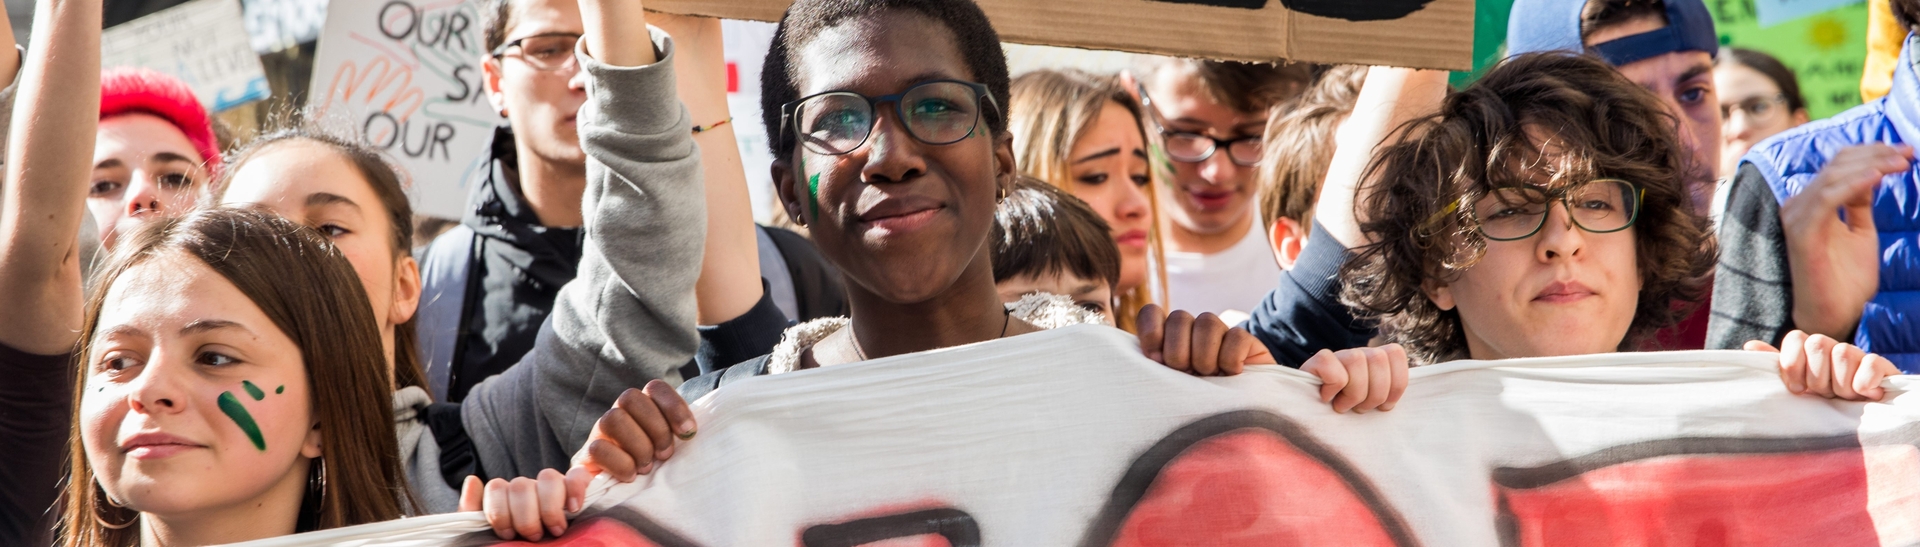 Bild, auf dem junge, demonstrierende Frauen und Männer mit Plakaten und Transparenten zu sehen sind. Das Bild verlinkt auf die Internetseiten des Bereichs Internationale Arbeit der Friedrich-Ebert-Stiftung.